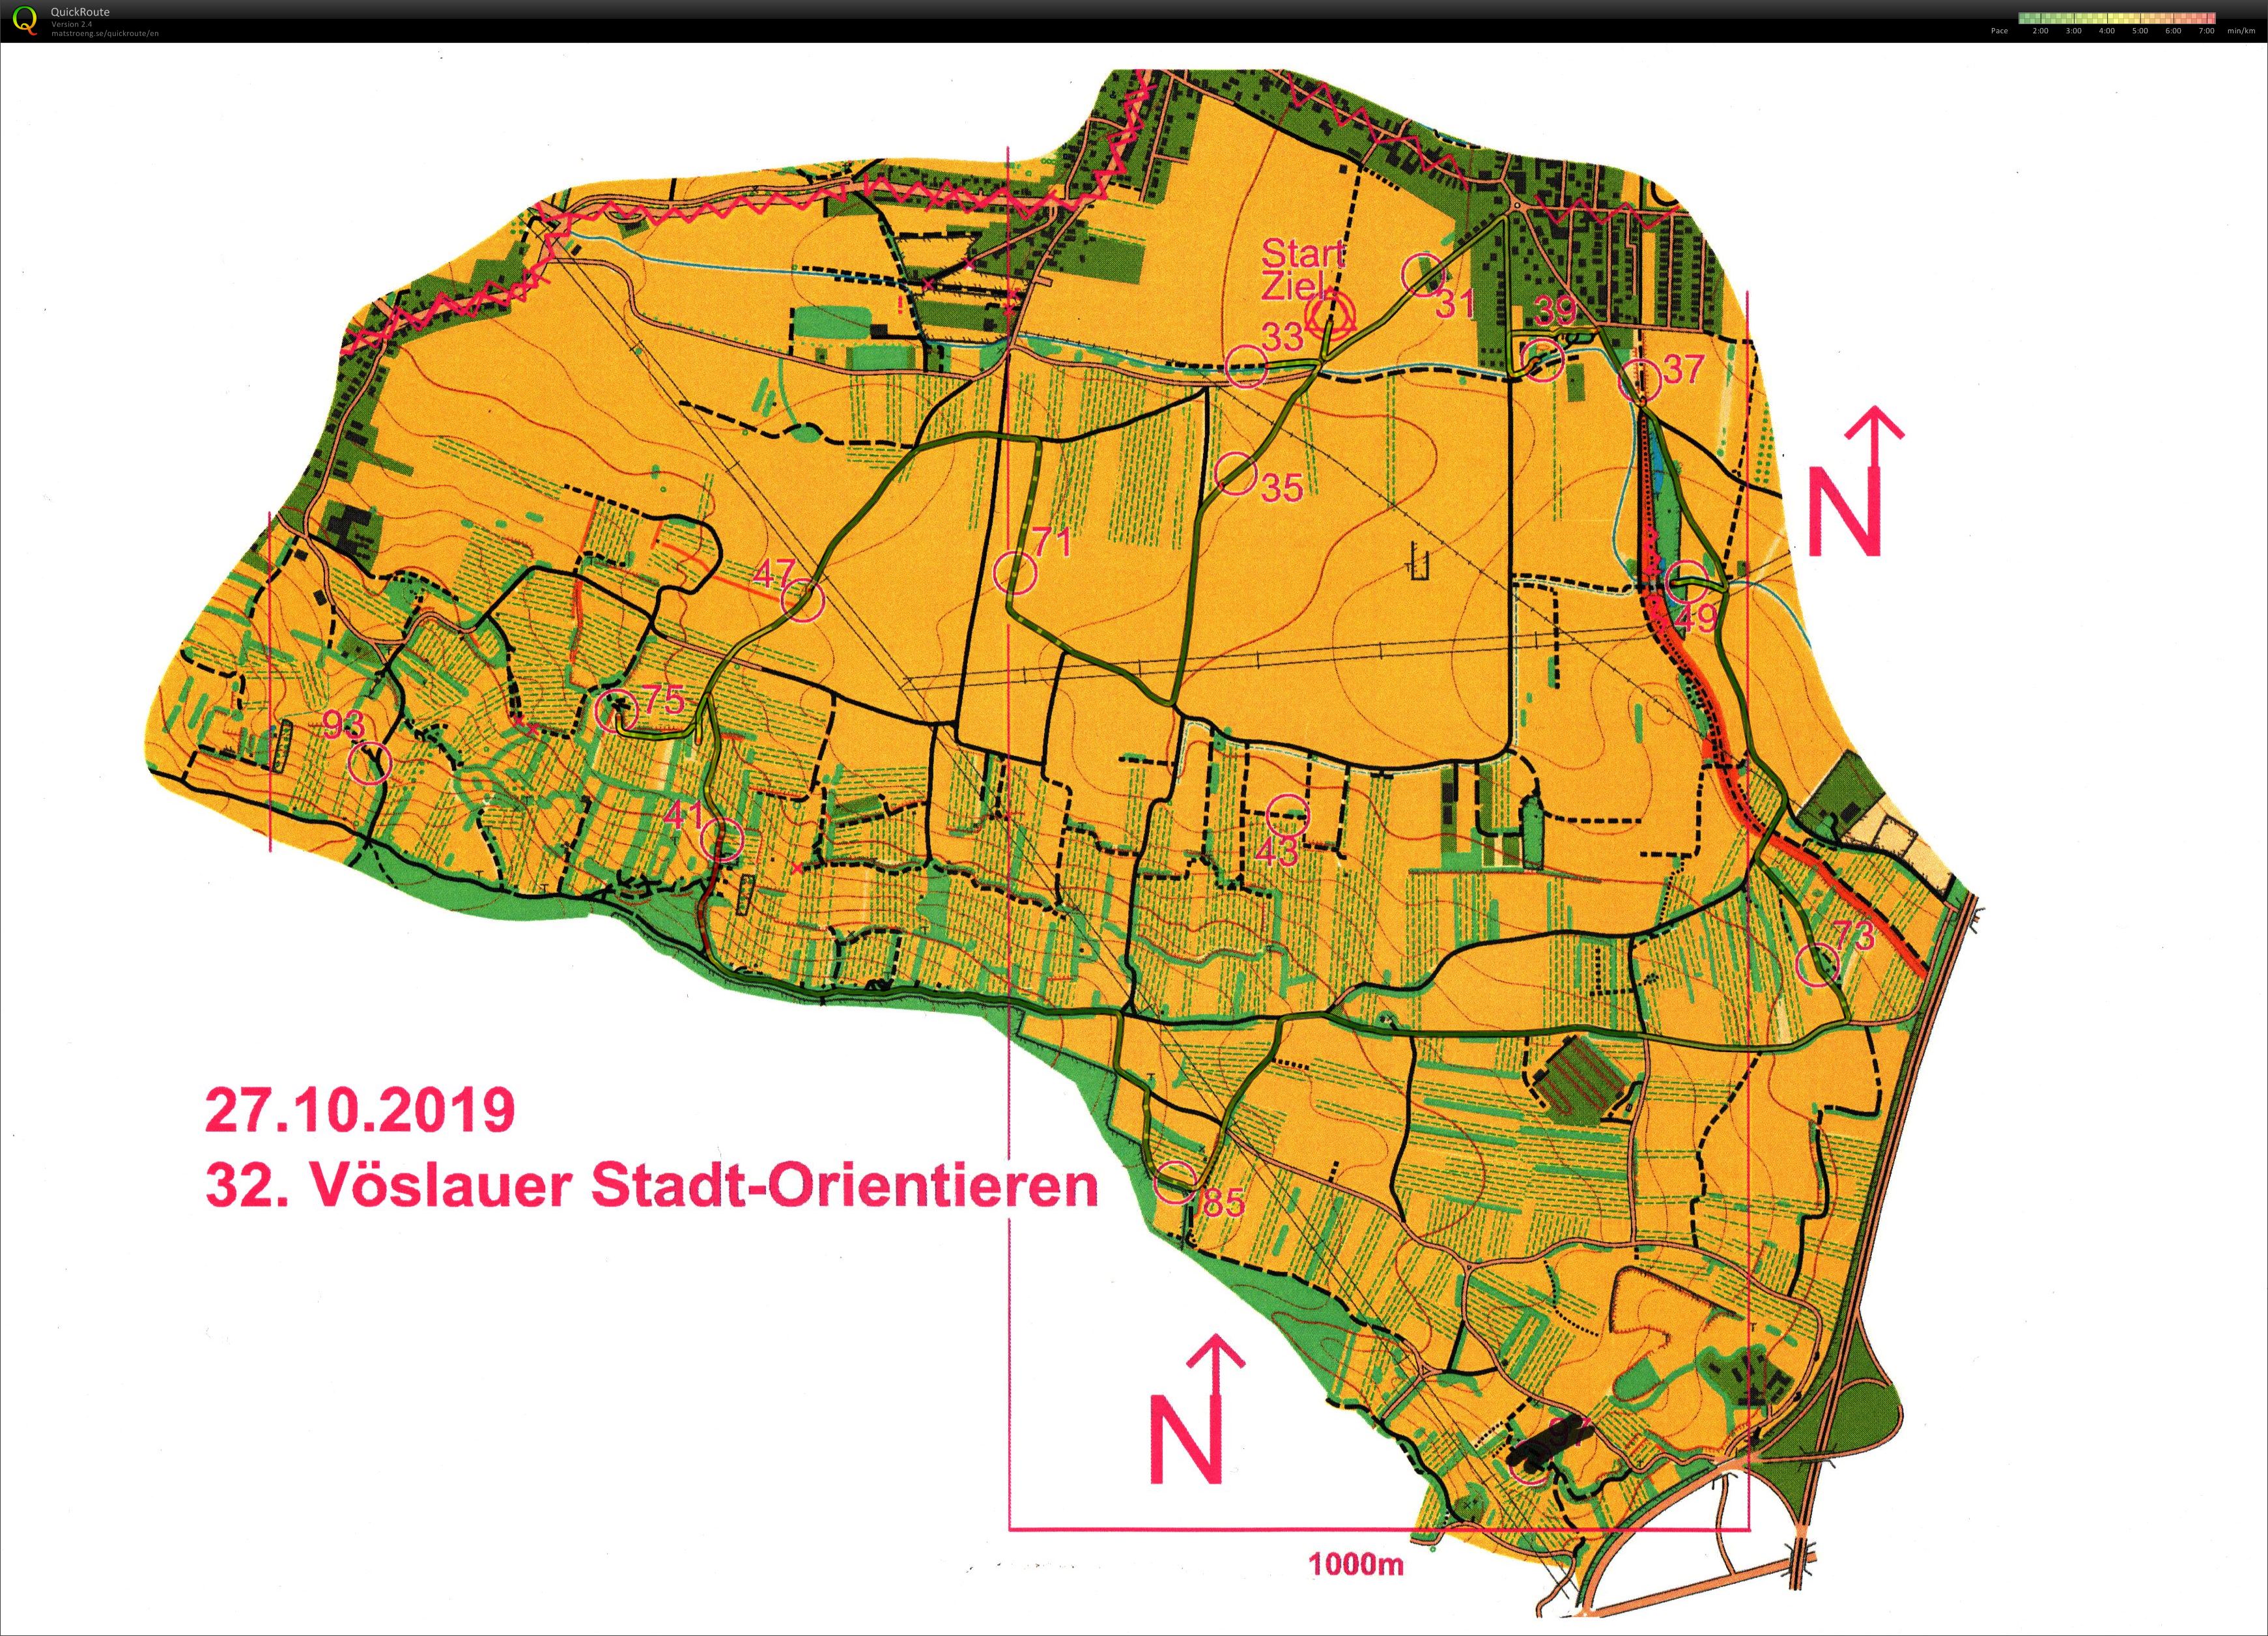 Vöslauer Stadt-Orientieren (27.10.2019)